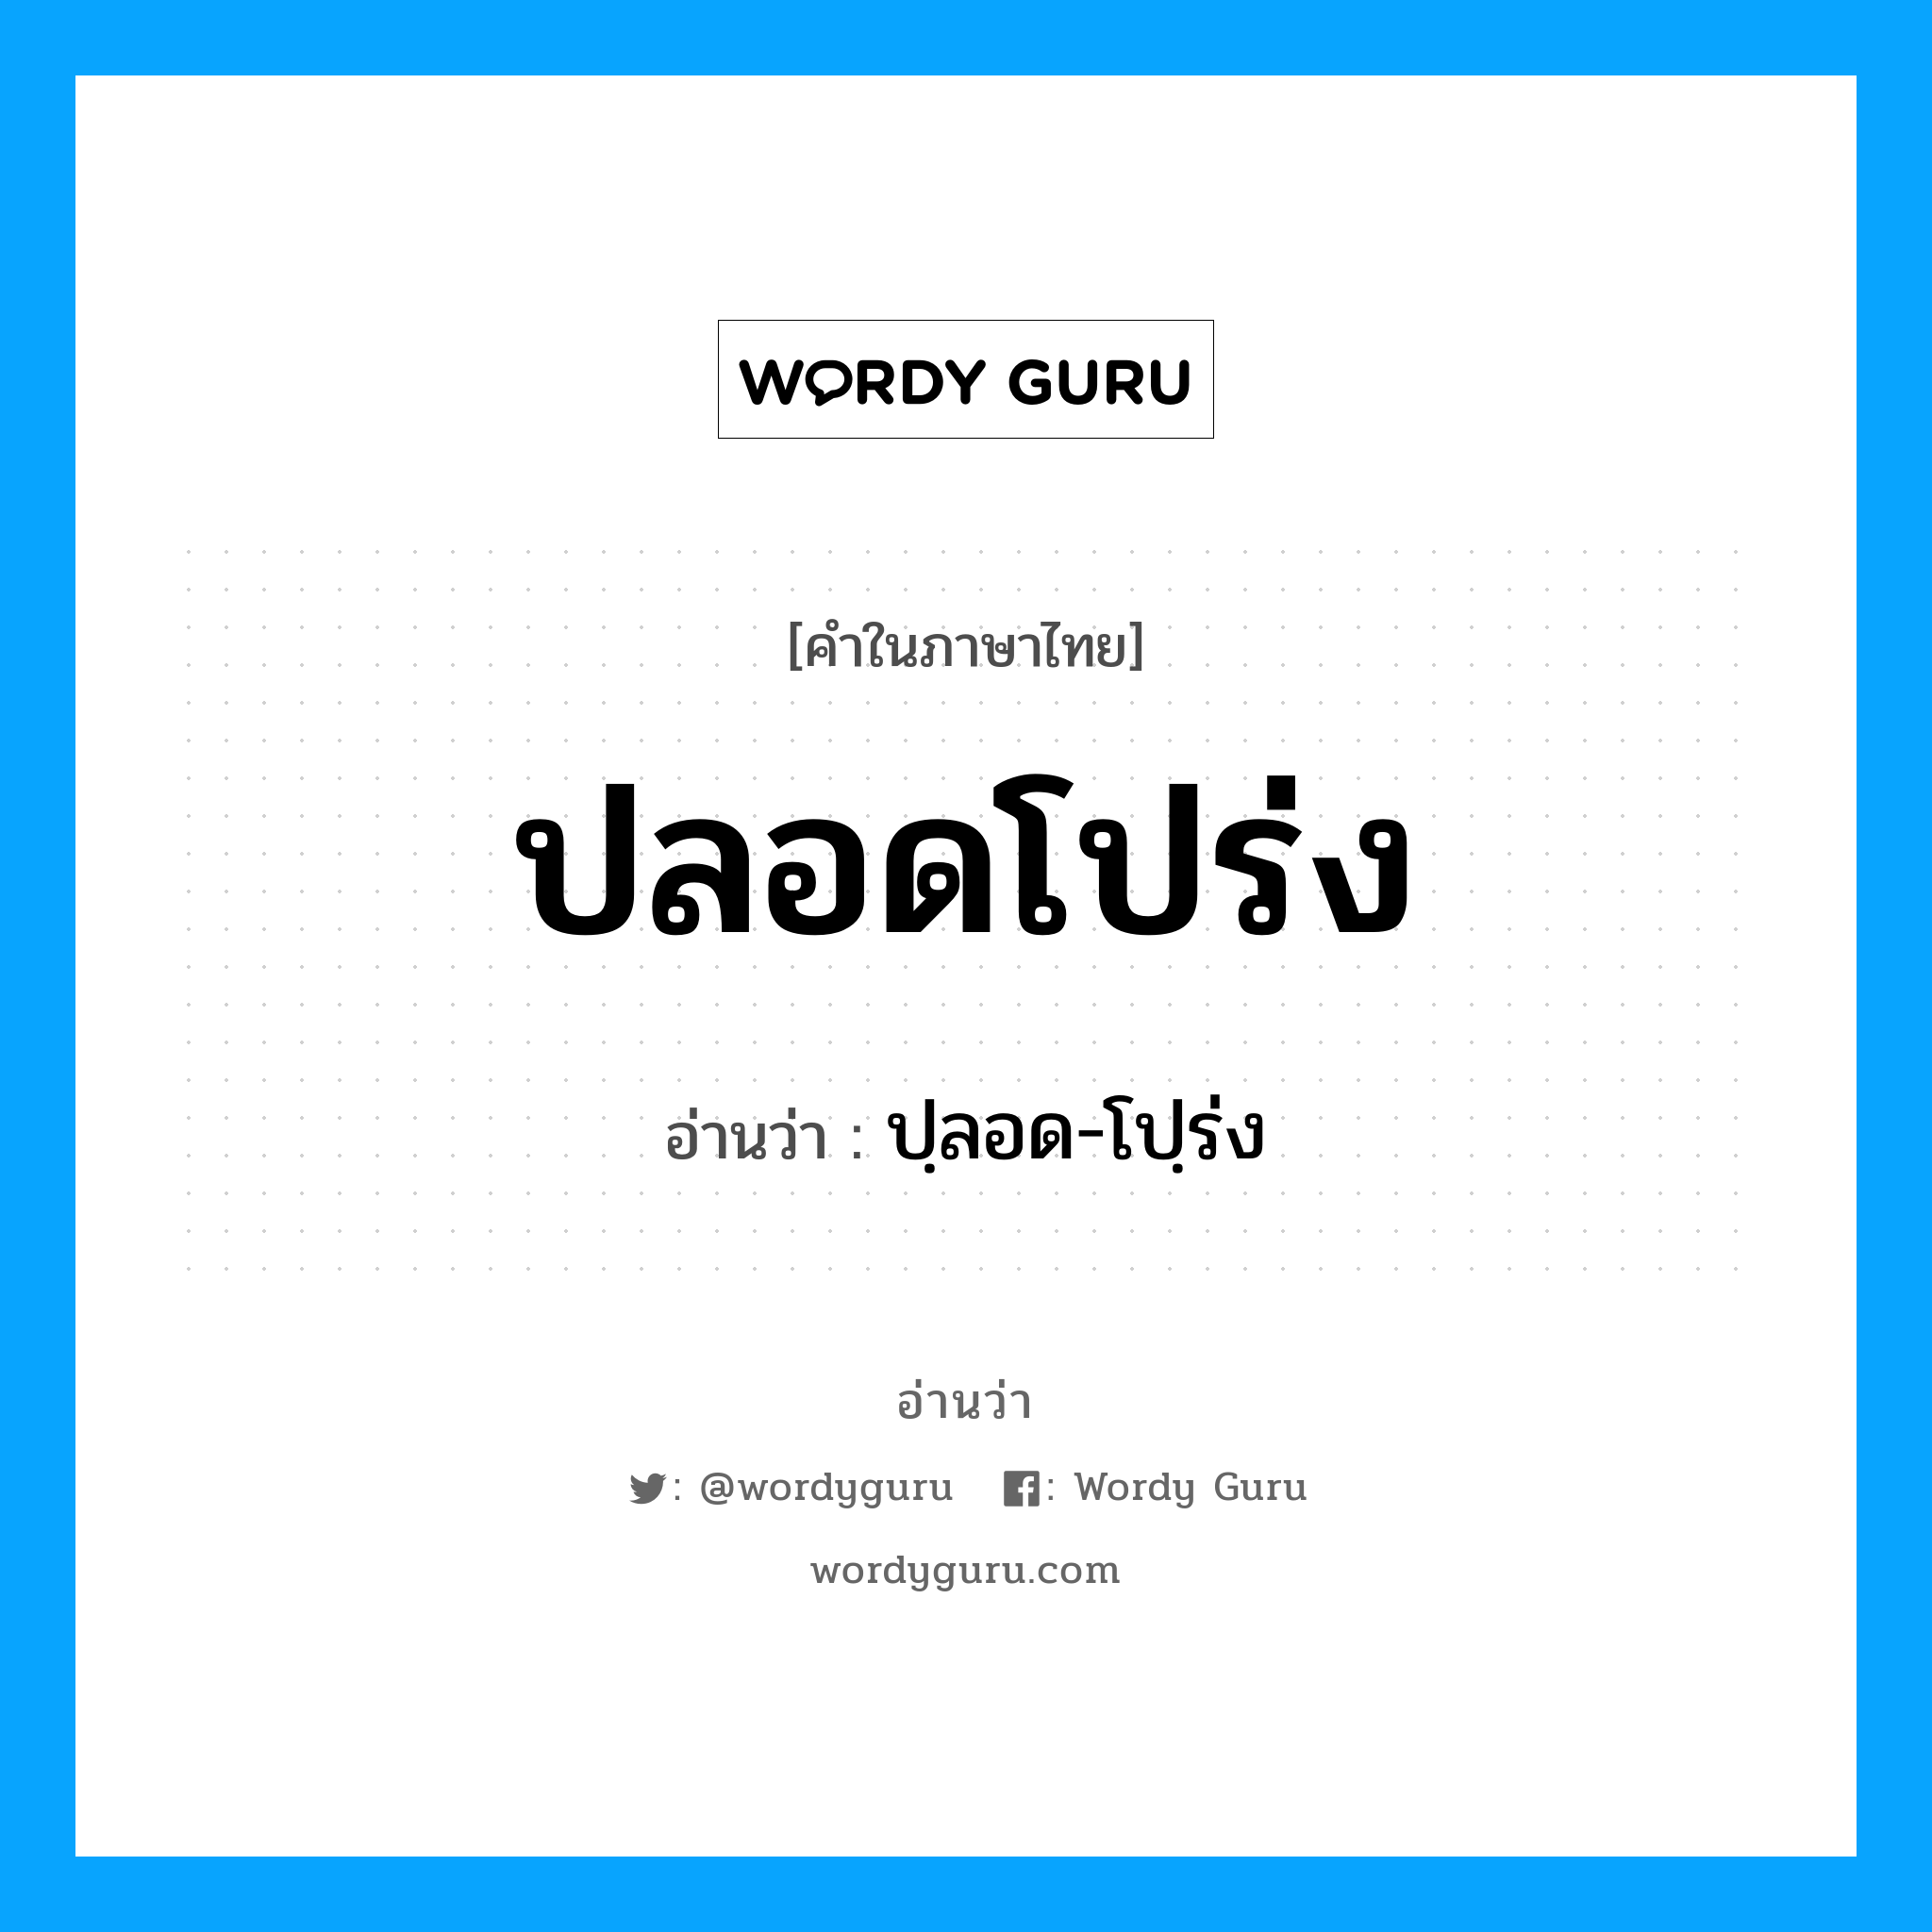 ปลอดโปร่ง อ่านว่า?, คำในภาษาไทย ปลอดโปร่ง อ่านว่า ปฺลอด-โปฺร่ง